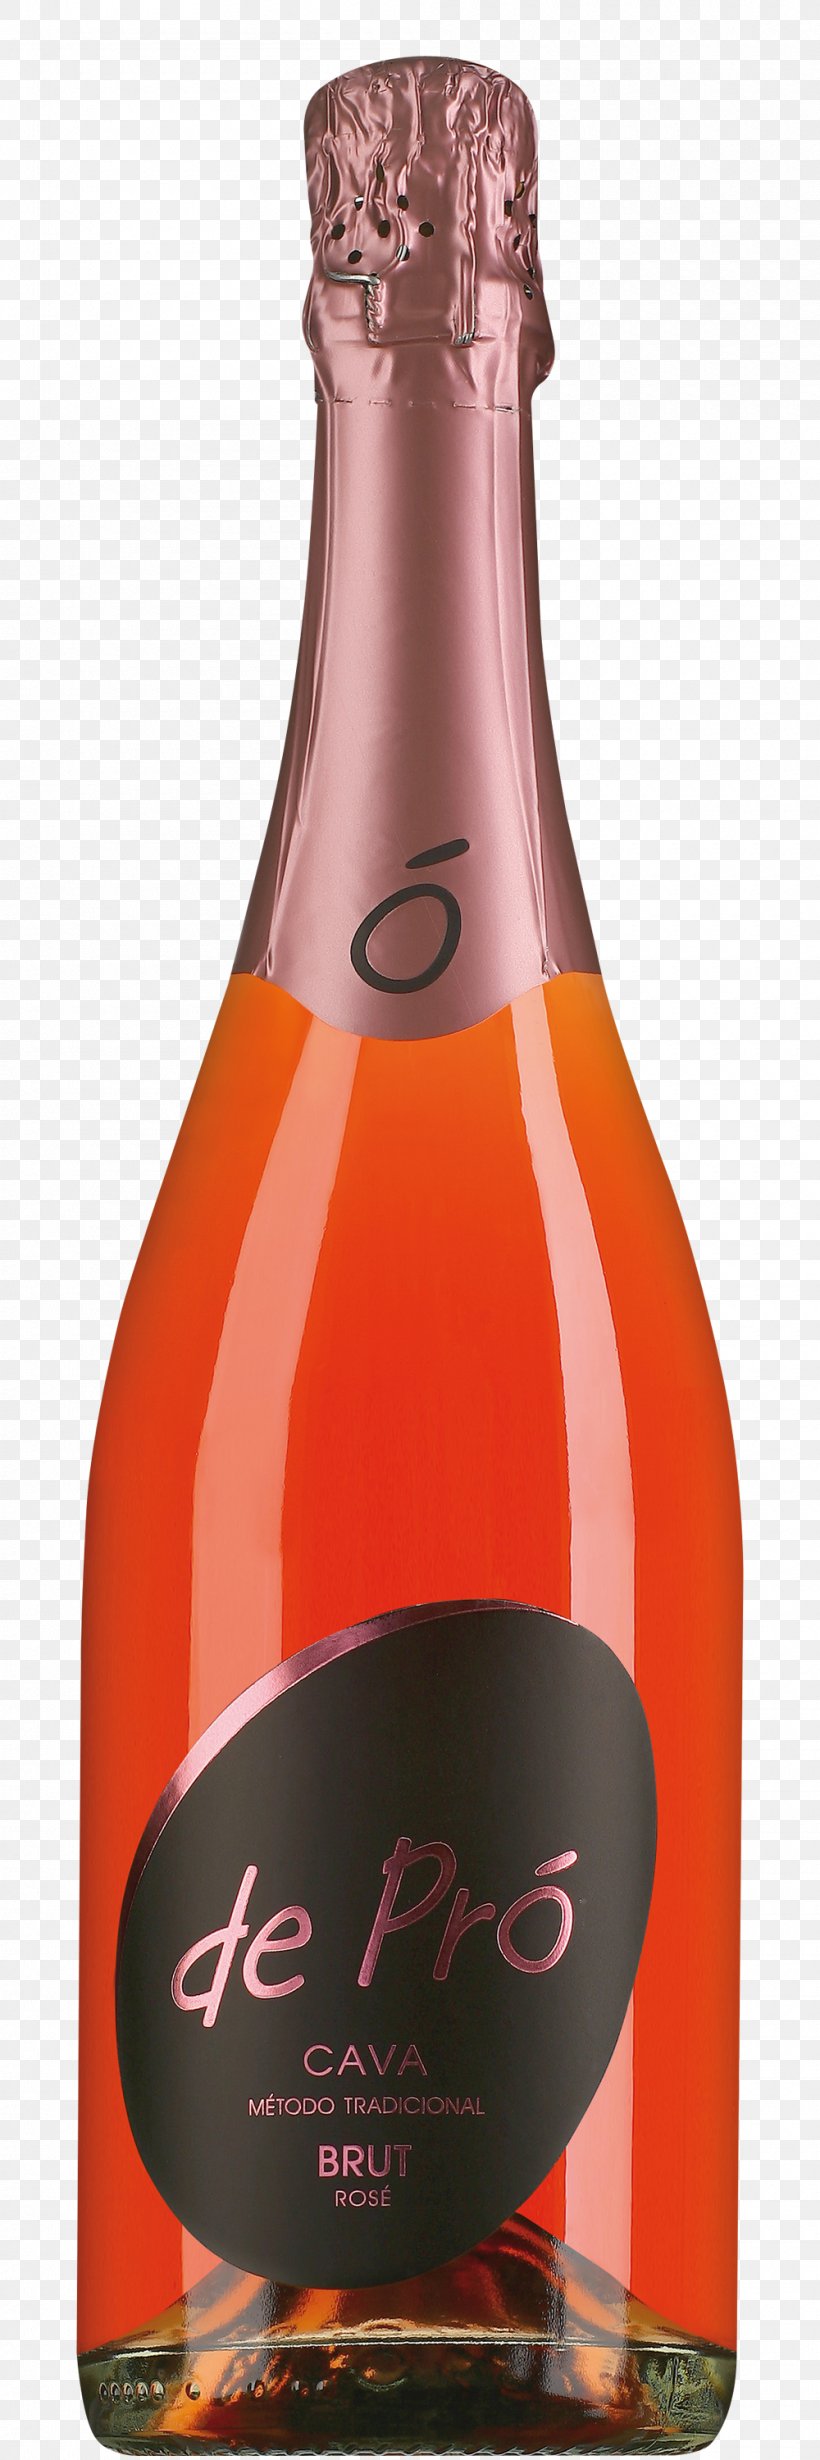 Champagne Cava DO Sparkling Wine Cava Brut Rosado, PNG, 1000x3000px, Champagne, Barrel, Beer Bottle, Bottle, Bottle Shop Download Free